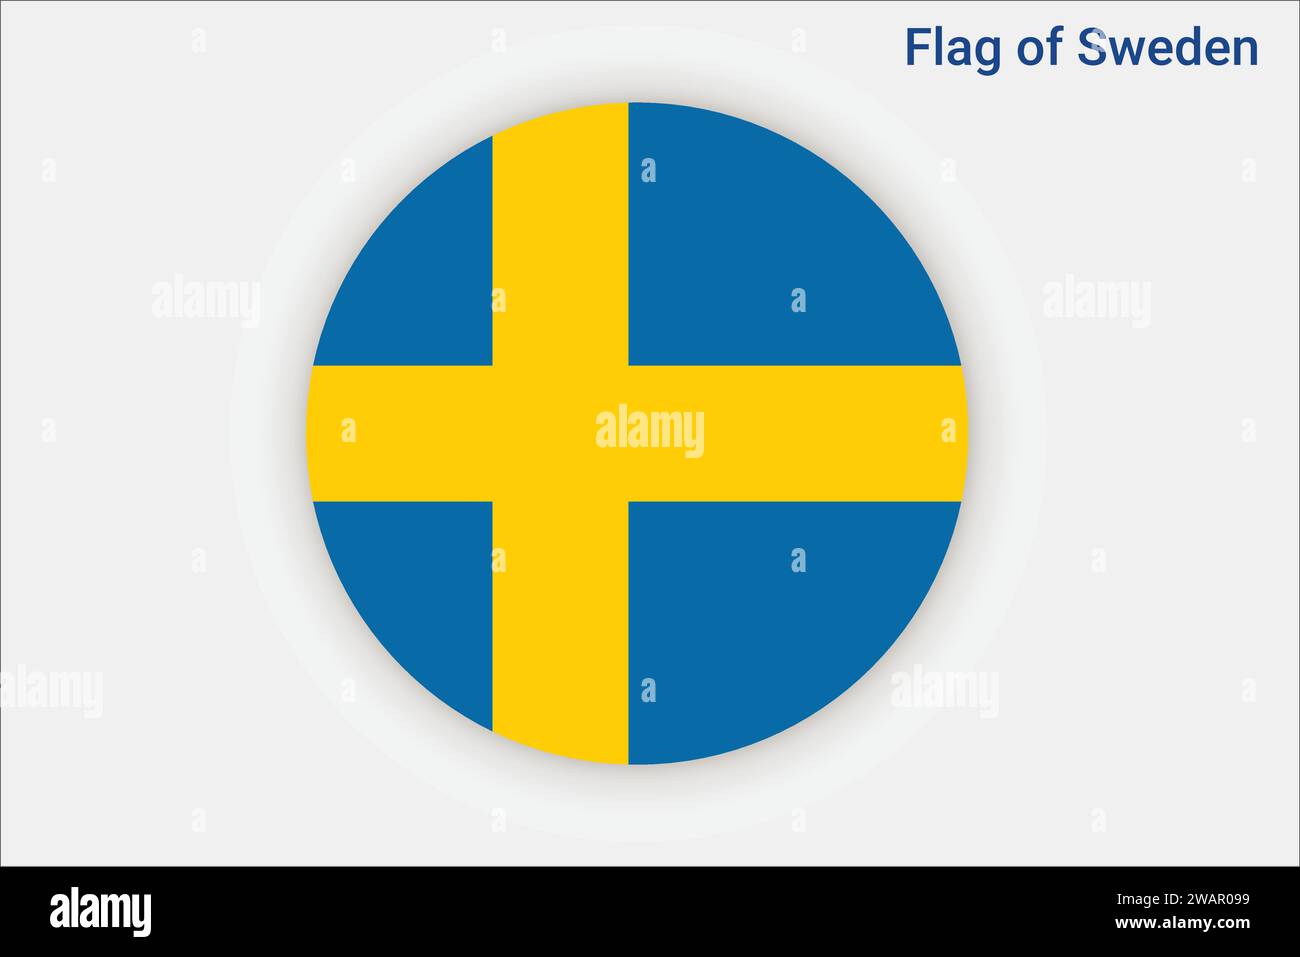 Hochdetaillierte Flagge Schwedens. Schwedische Nationalflagge. Europa. 3D-Abbildung. Stock Vektor